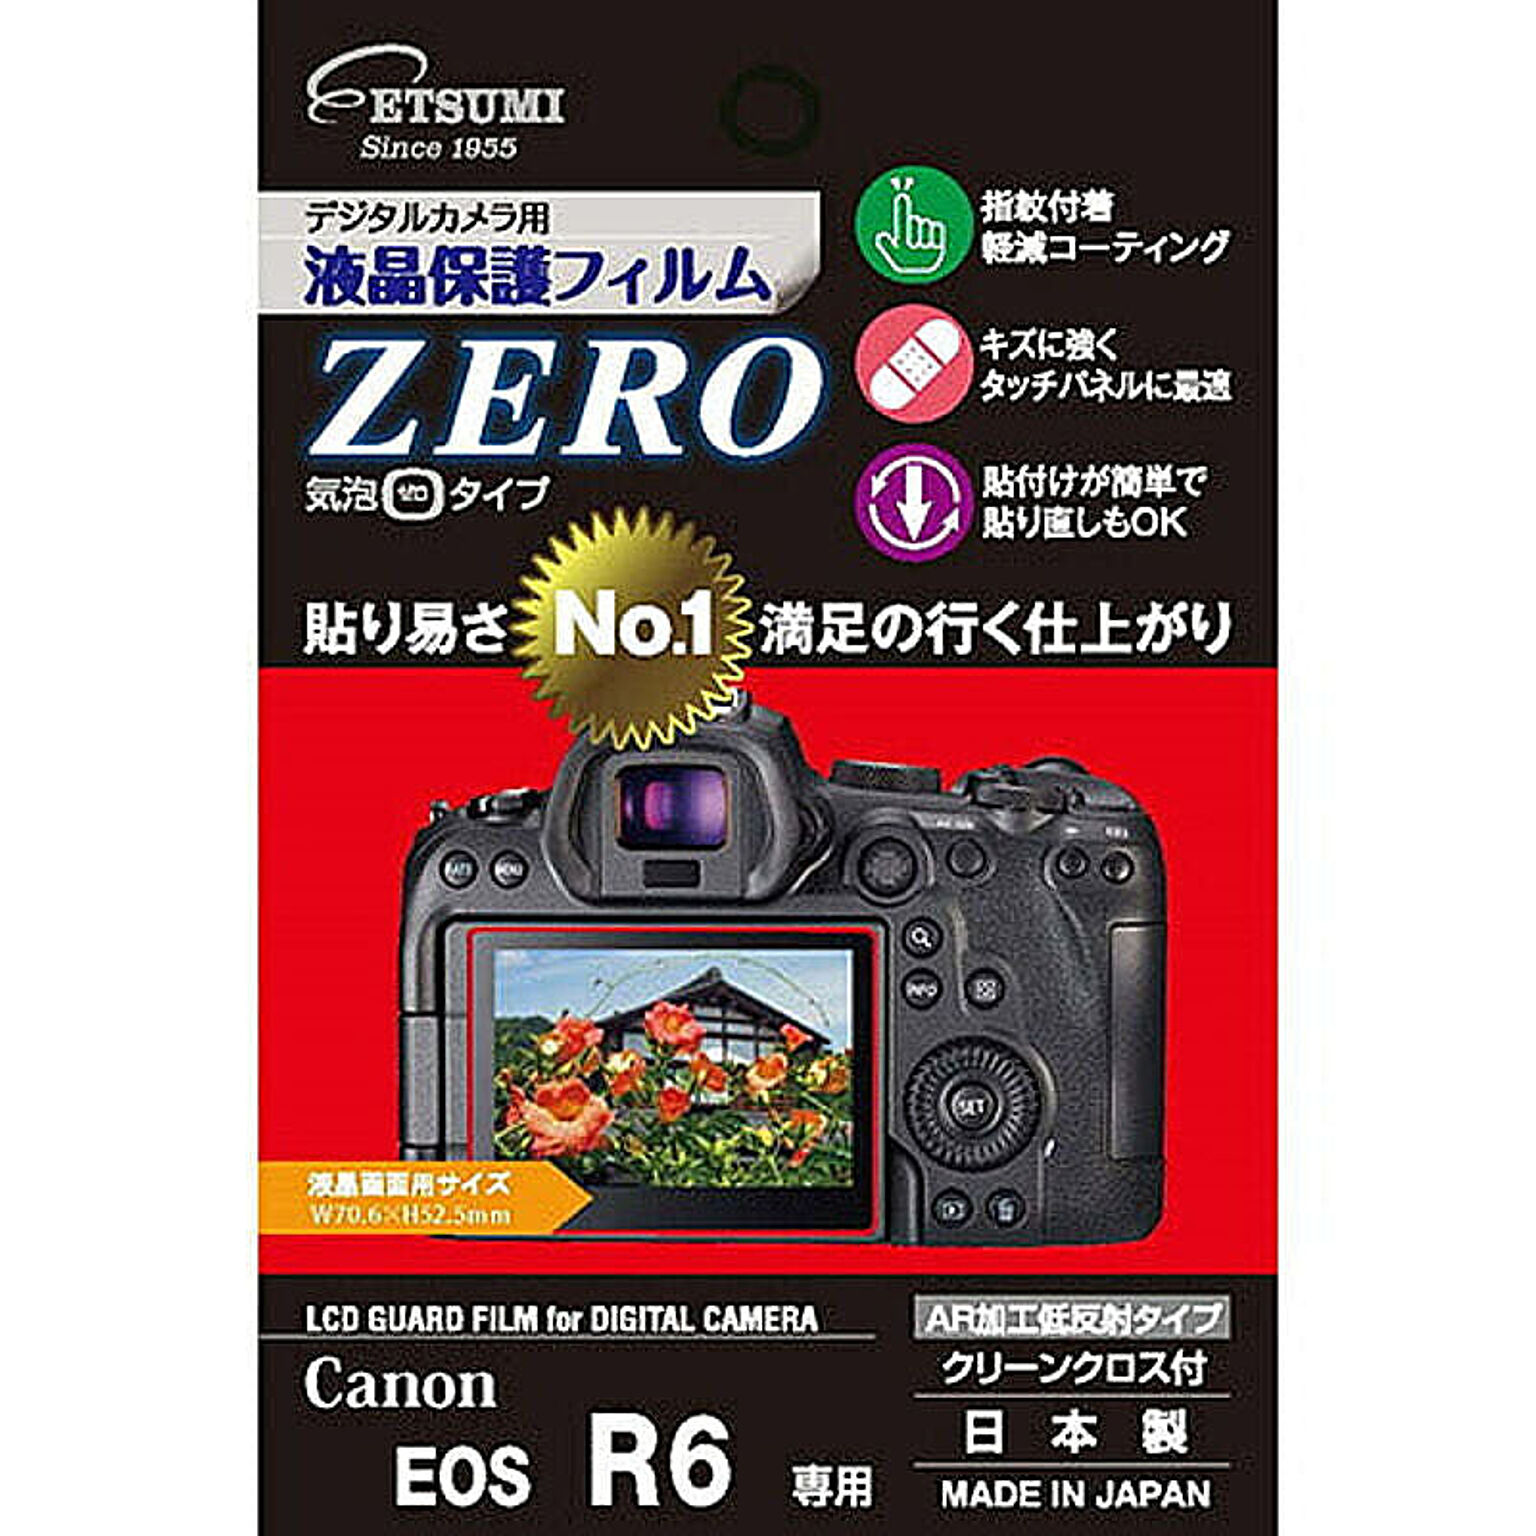 エツミ デジタルカメラ用液晶保護フィルムZERO Canon EOS R6専用 VE-7388 管理No. 4975981828423